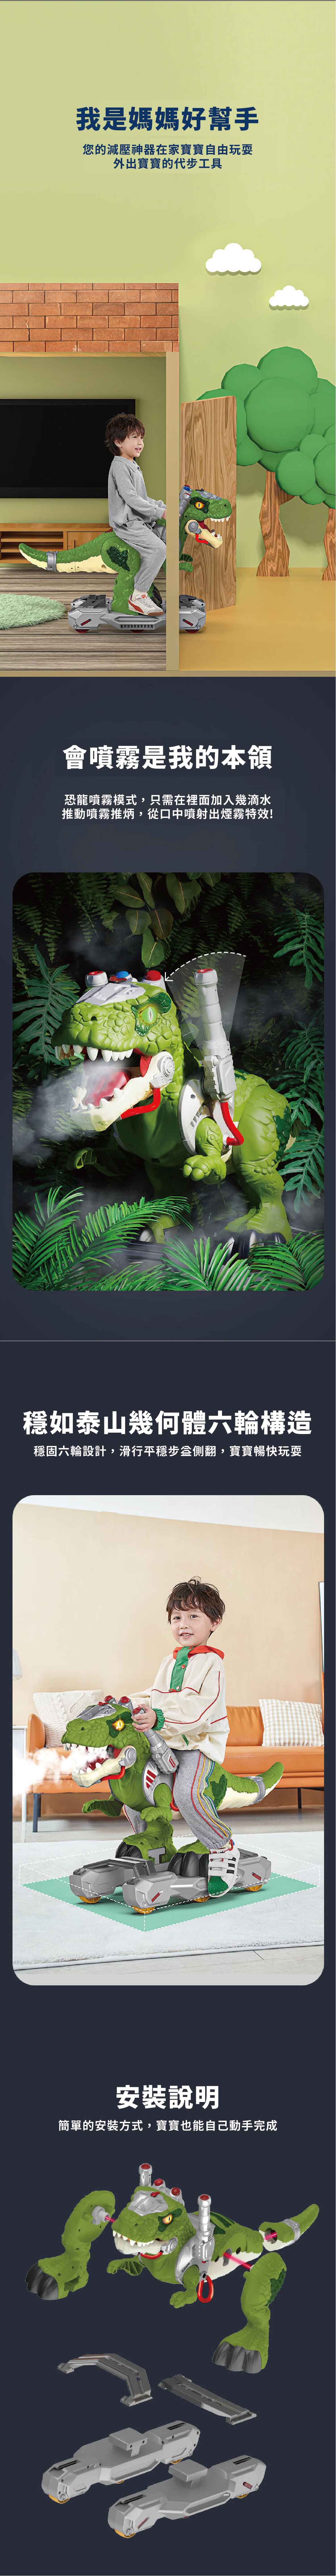 proimages/product/00027974_聲光噴射恐龍戰士滑行車(綠)(CN-2865339)-05.jpg